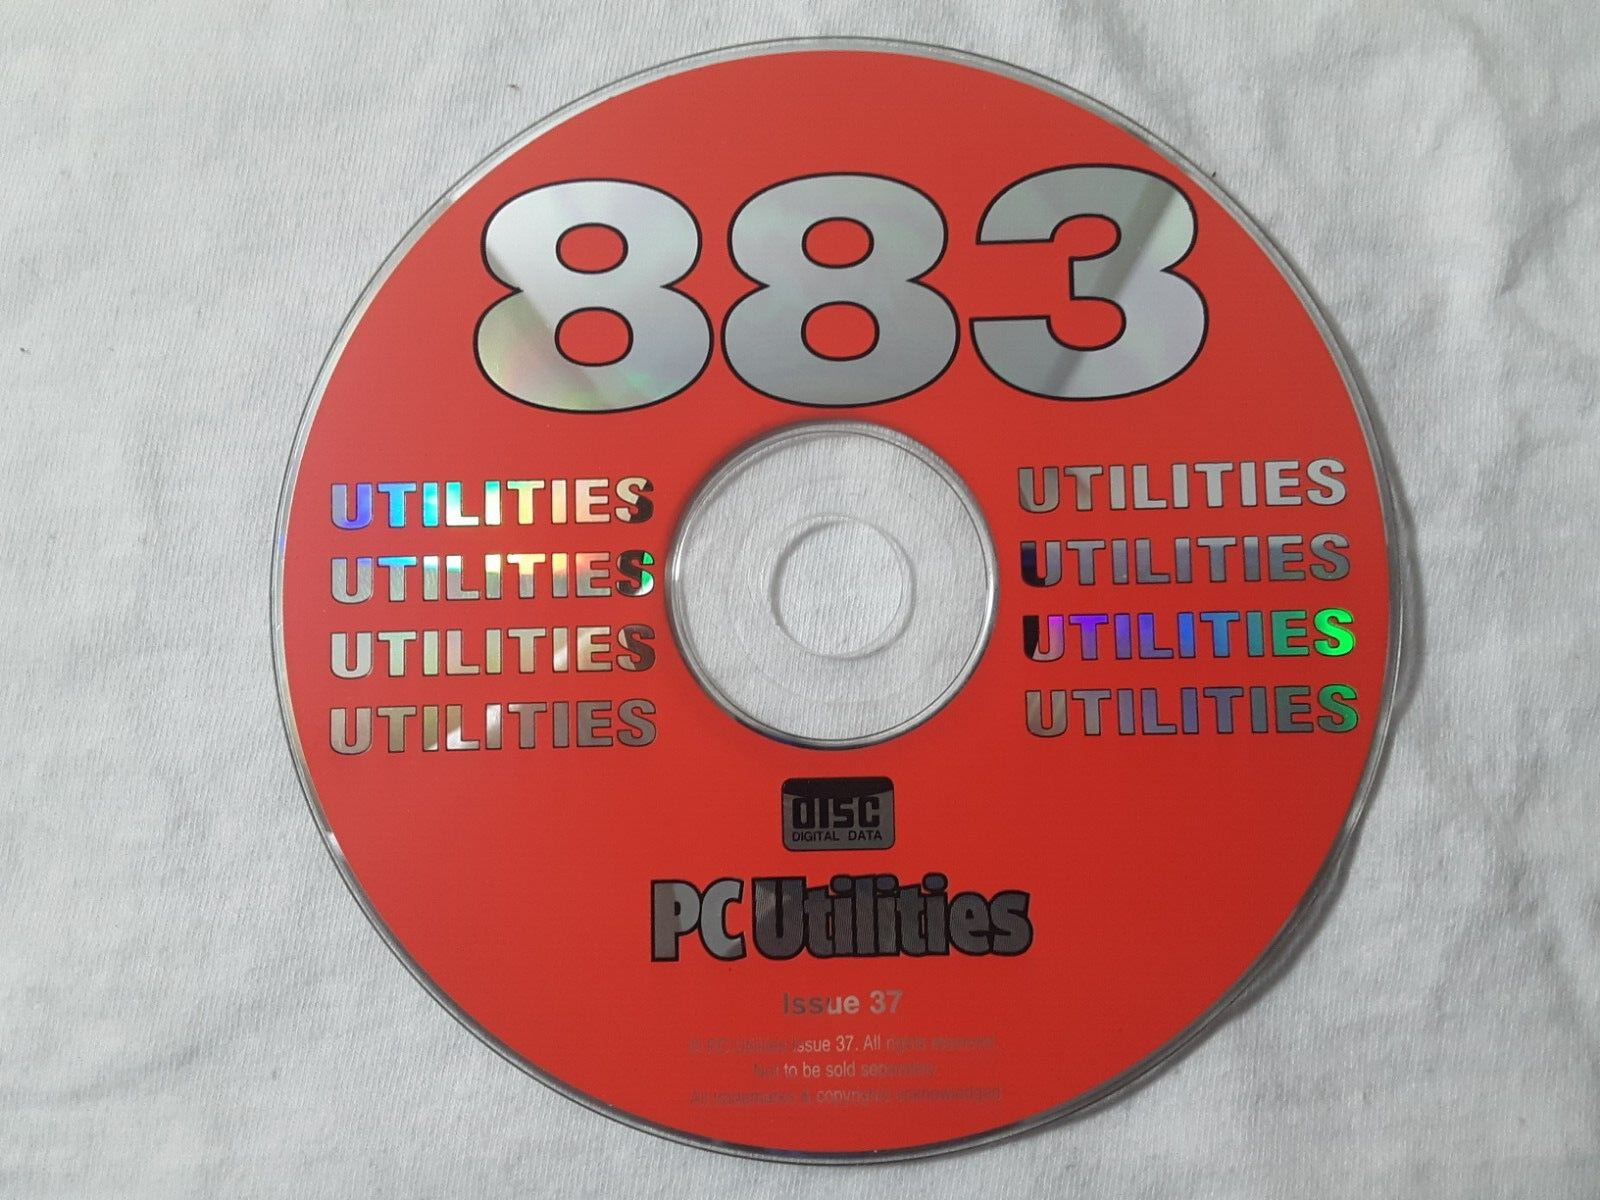 retro 2002 CD-Rom PC Utilities #37 - 883 Utilities  rare vintage